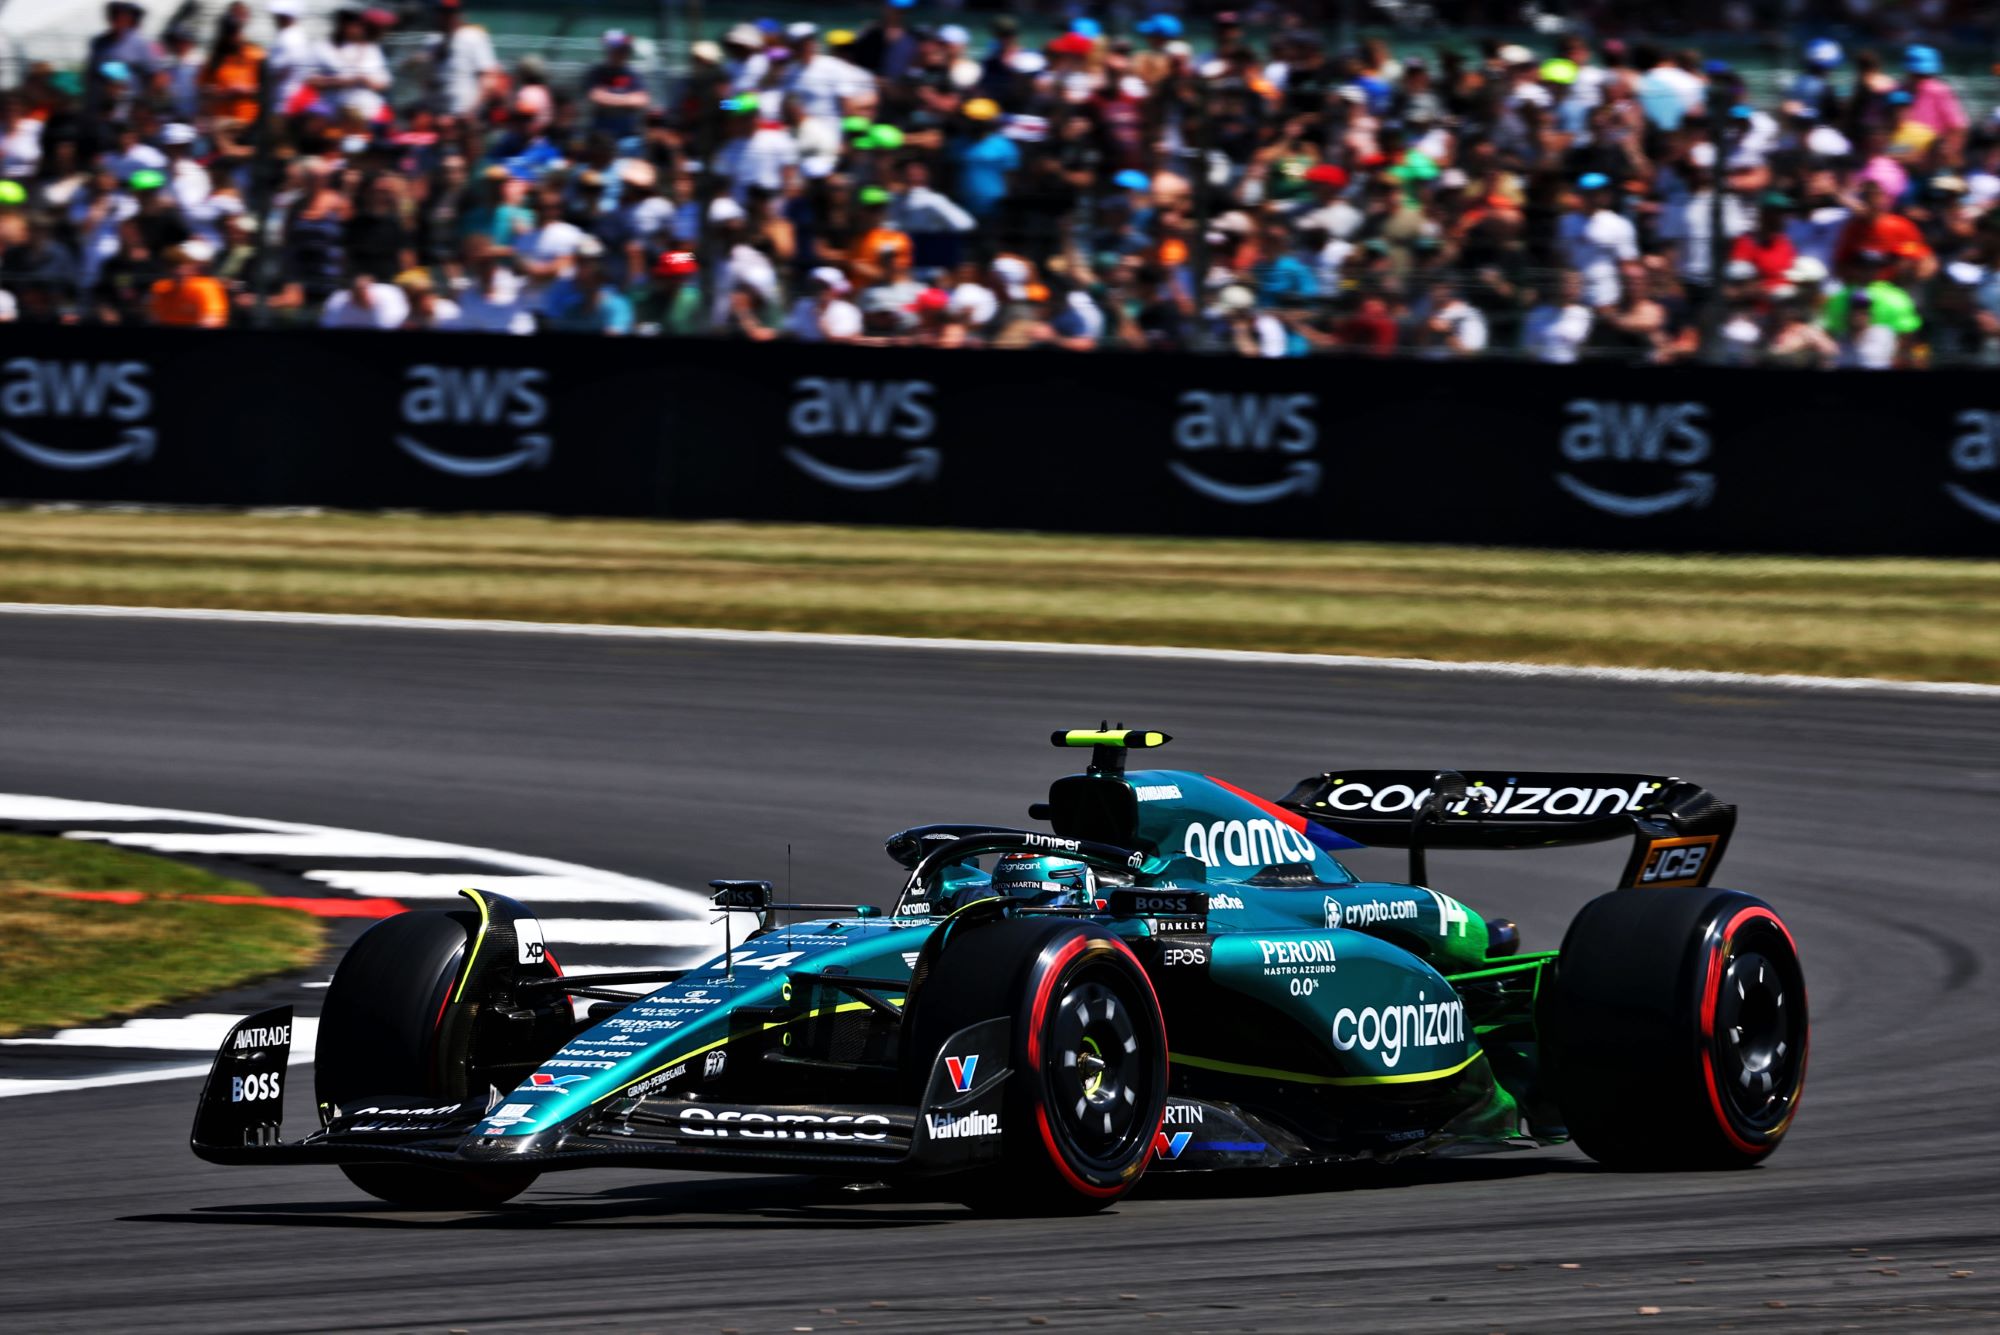 F1: Relatos sugerem dúvidas sobre conformidade de equipes com teto de gastos de 2022